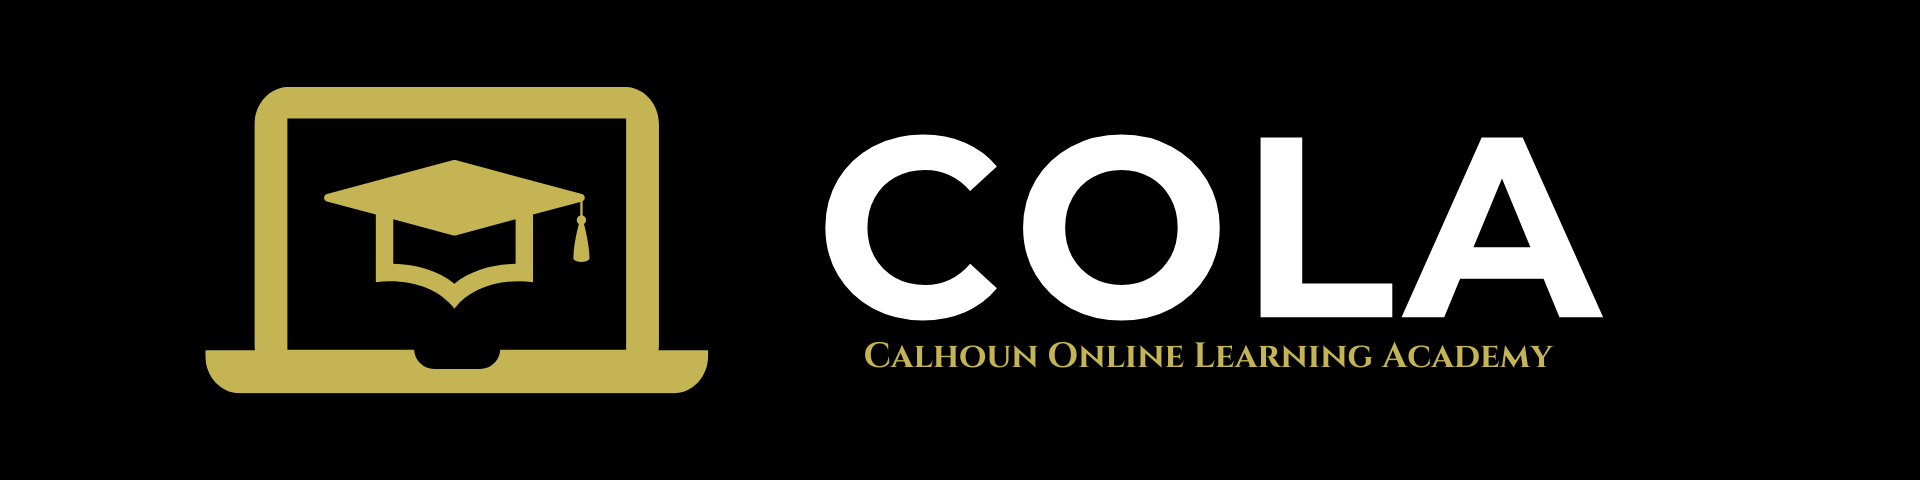 cola registration